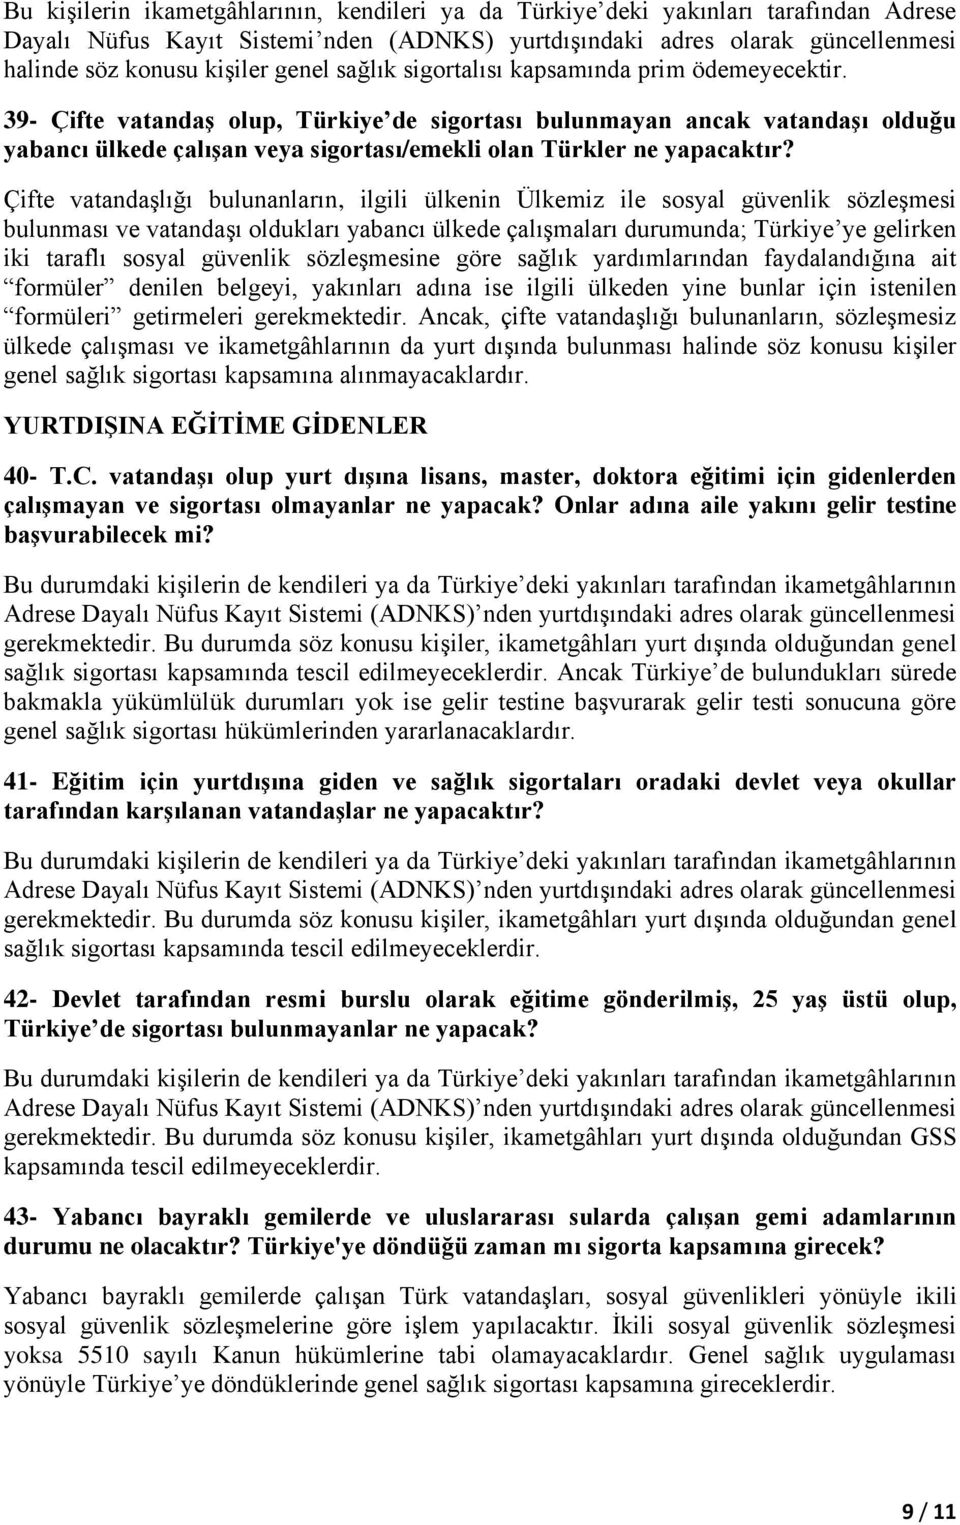 39- Çifte vatandaģ olup, Türkiye de sigortası bulunmayan ancak vatandaģı olduğu yabancı ülkede çalıģan veya sigortası/emekli olan Türkler ne yapacaktır?